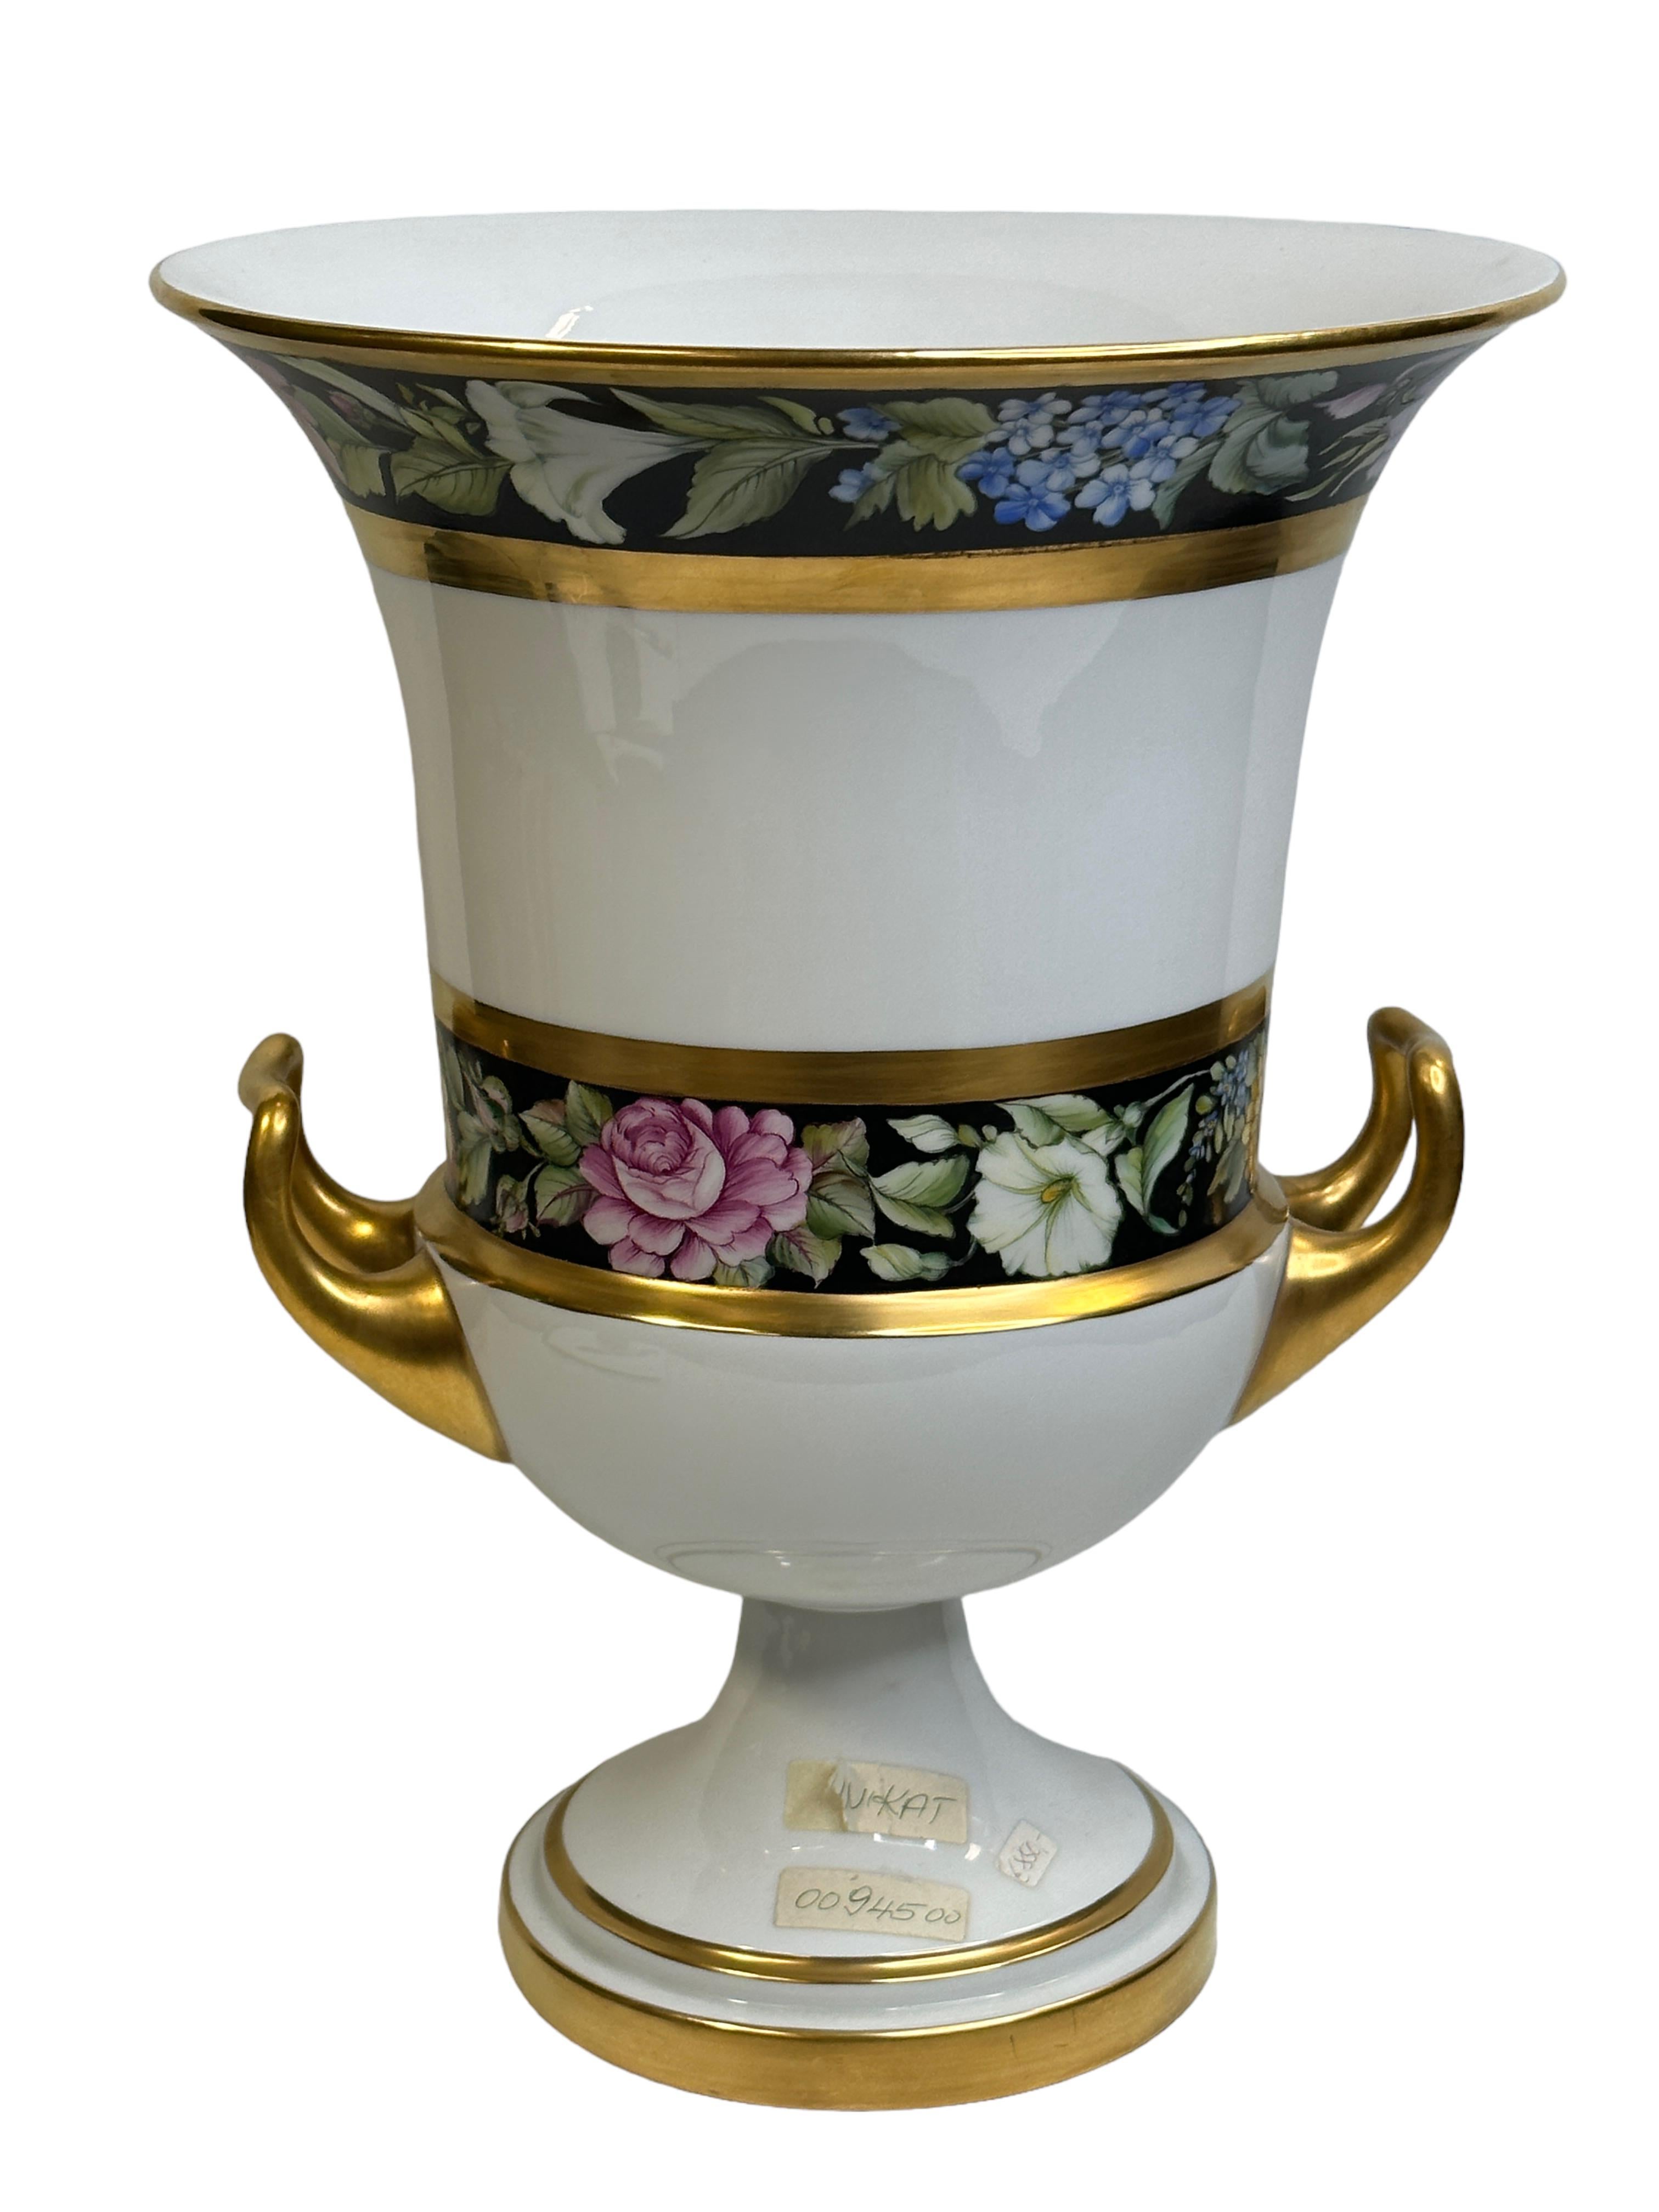 Exceptional Fürstenberg Pedestal Medici form Twin Handled Urn Vase Unique Sample In Good Condition For Sale In Nuernberg, DE